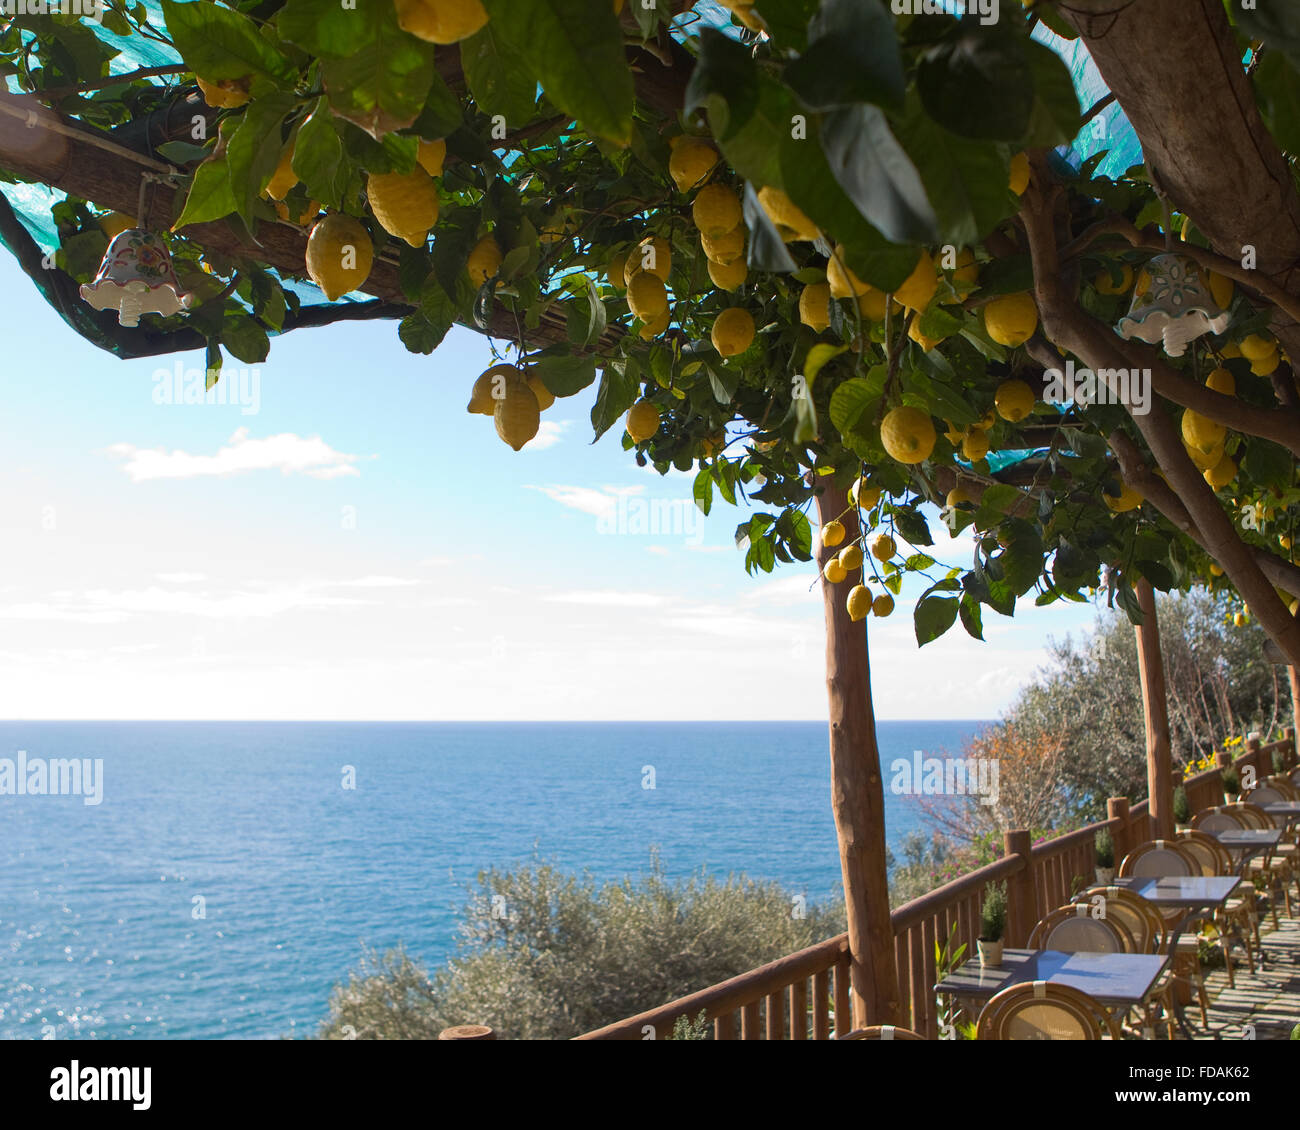 Lemon tree overlooking the Mediterranean Sea Stock Photo